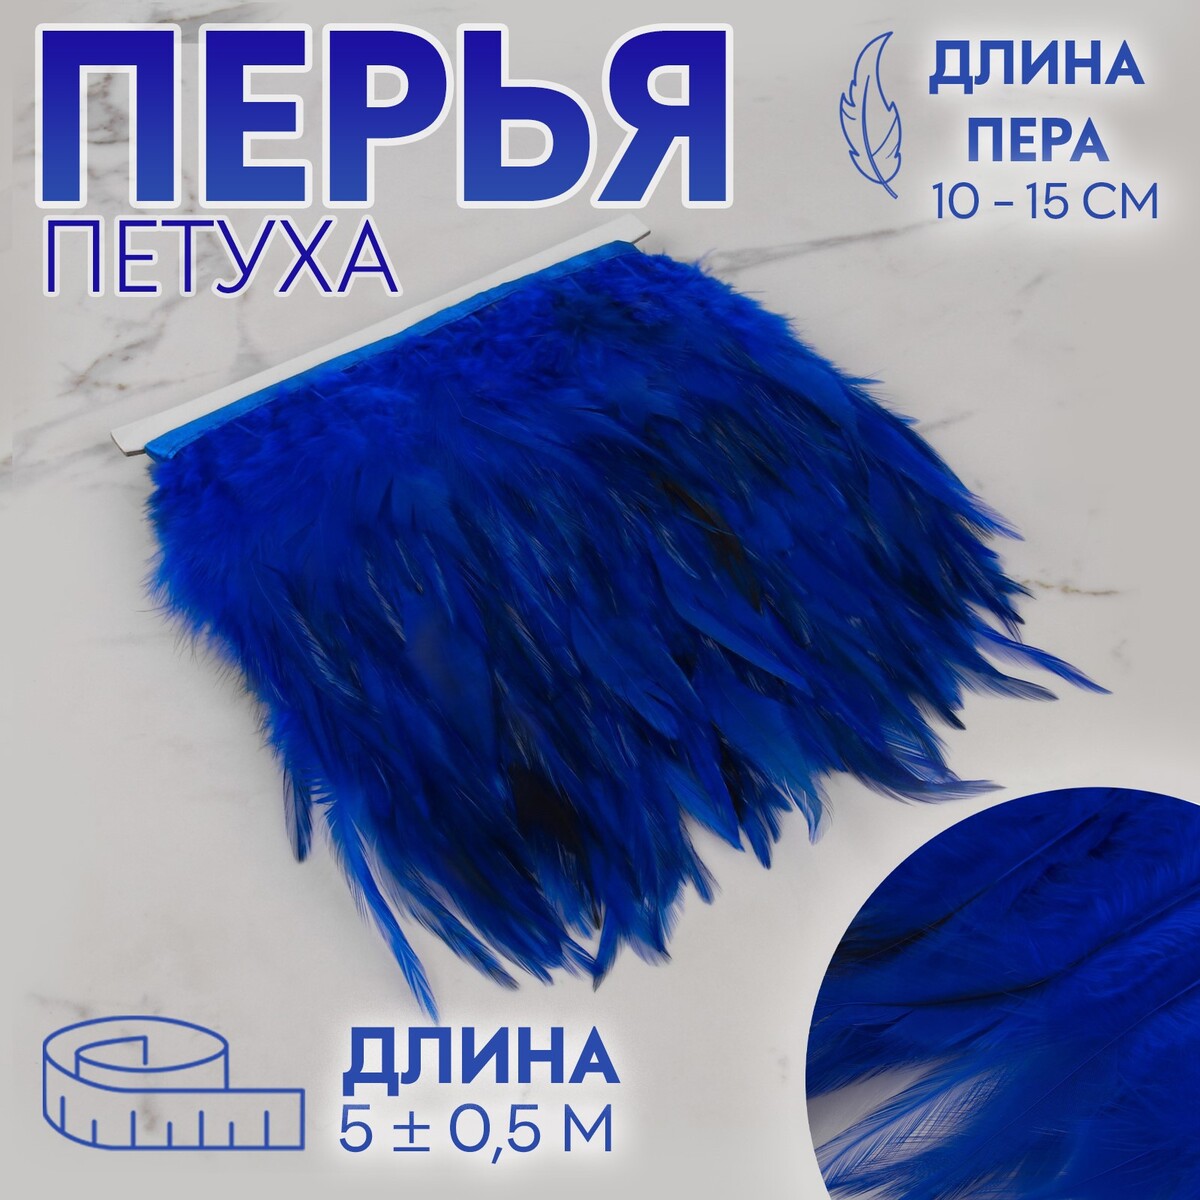 Тесьма с перьями петуха, 10-15 см, 5 ± 0,5 м, цвет синий тесьма с перьями страуса 8 10 см 5 ± 0 5 м белый